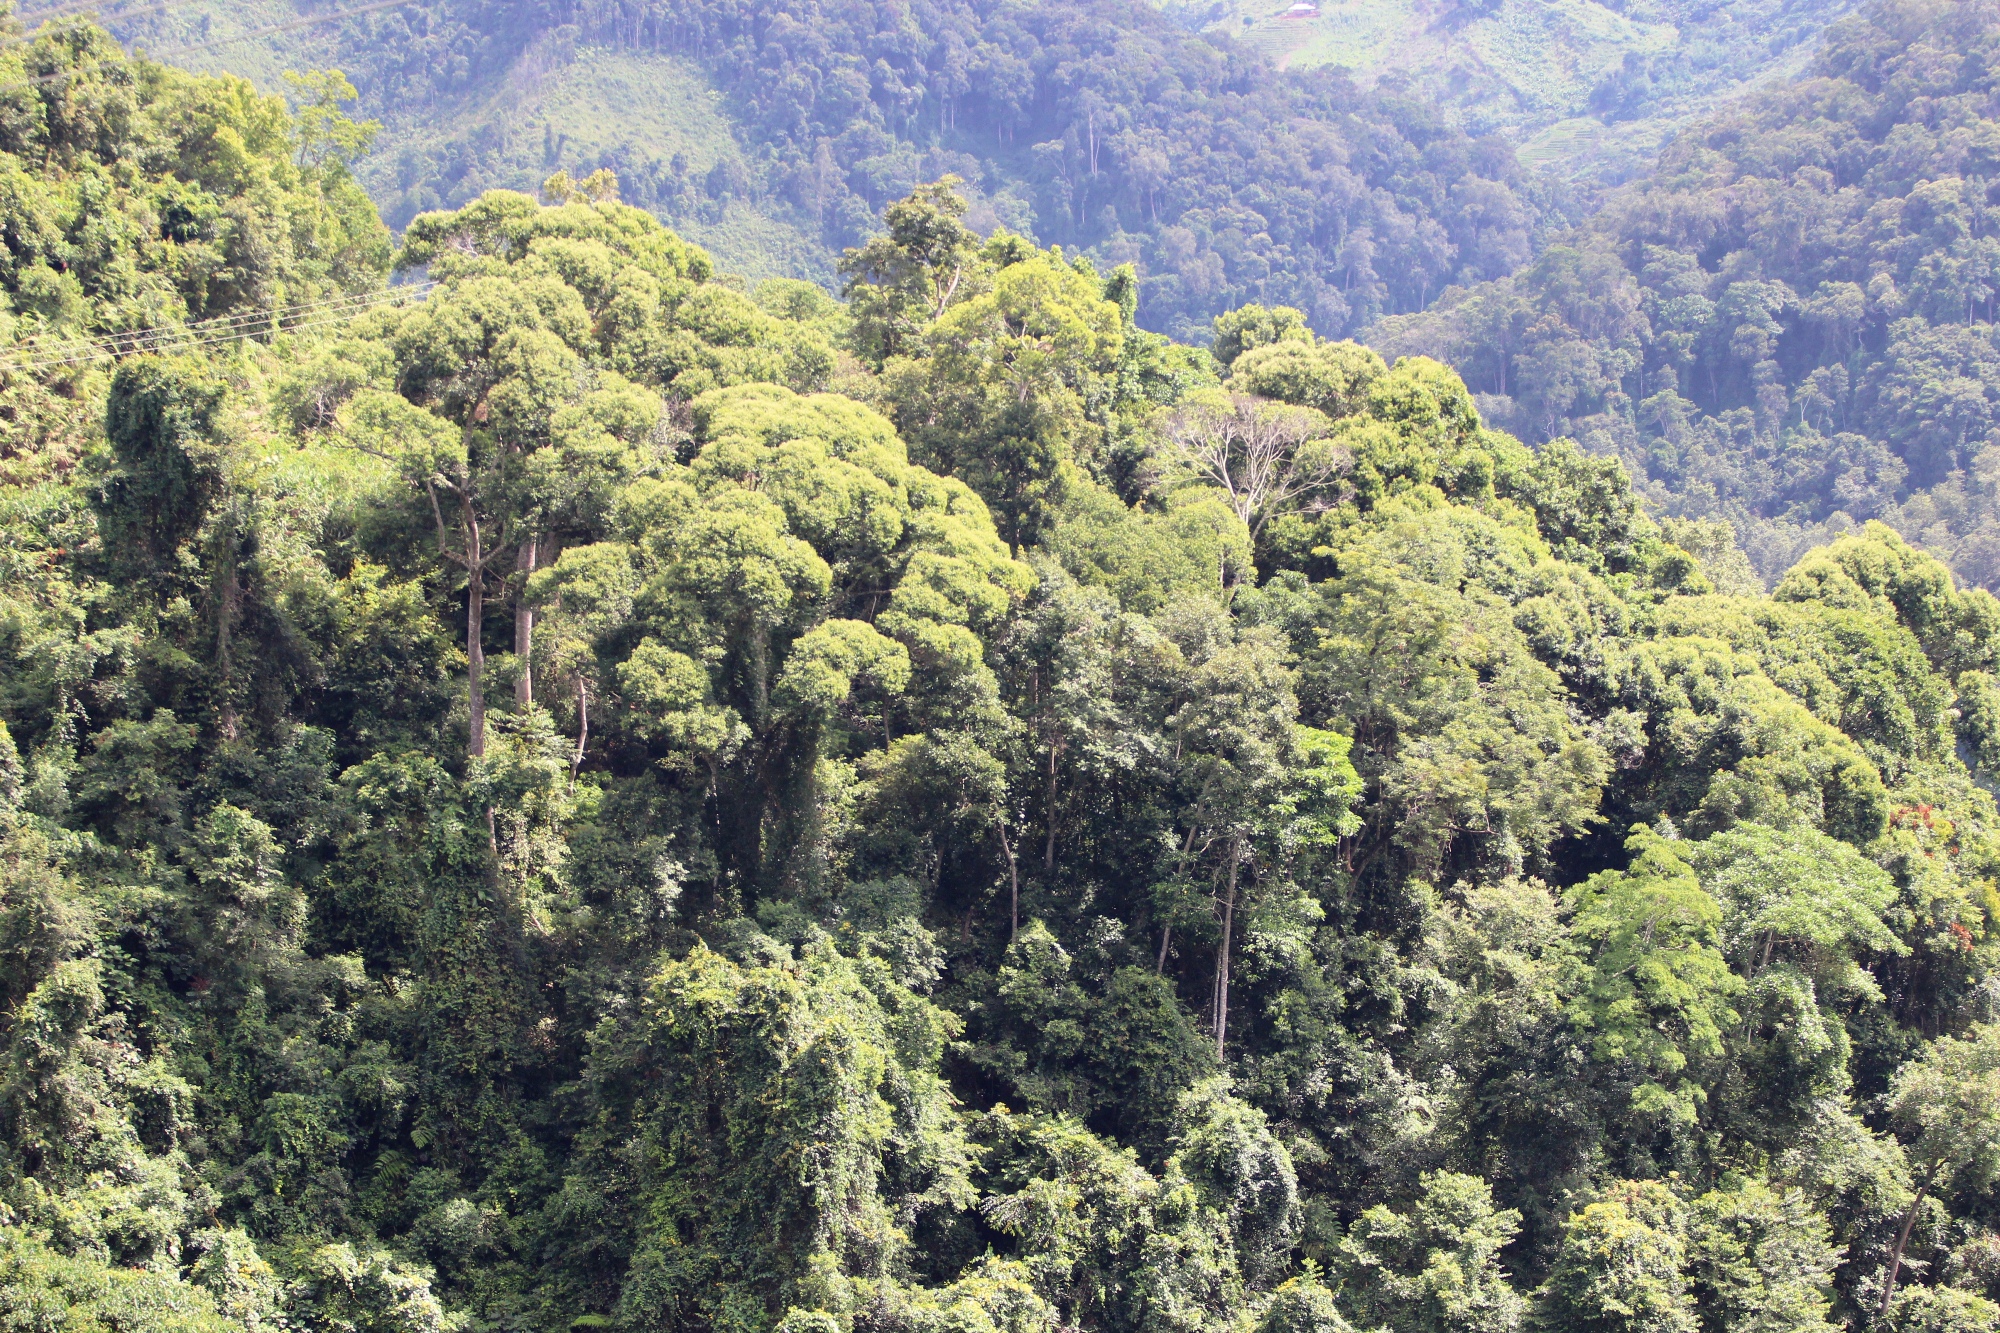 Sau 13 năm triển khai, Luật Bảo vệ phát triển rừng 2014 đã thể hiện sự chồng chéo, trùng phủ nhau, đặc biệt là còn thiếu những chính sách có hiệu quả trong việc ngăn chặn, đẩy lùi tình trạng “mất rừng theo kiểu mới” . (Ảnh: Hùng Võ/Vietnam+)